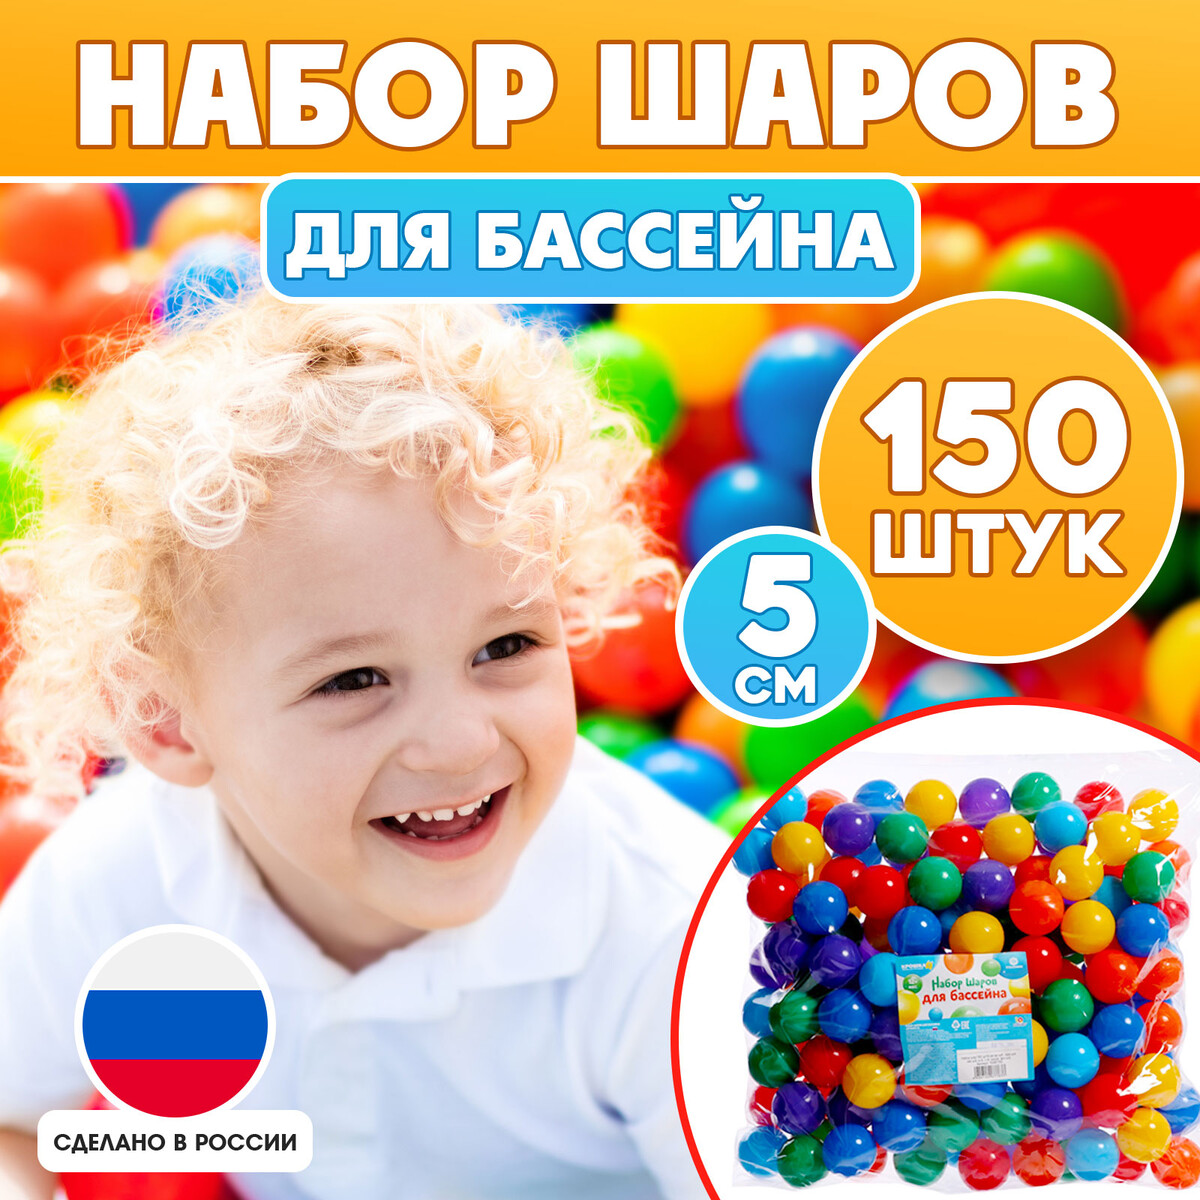 Набор шариков для бассейна, 150 шт, диаметр — 5 см, разноцветные детский сухой бассейн romana airpool серый без шариков